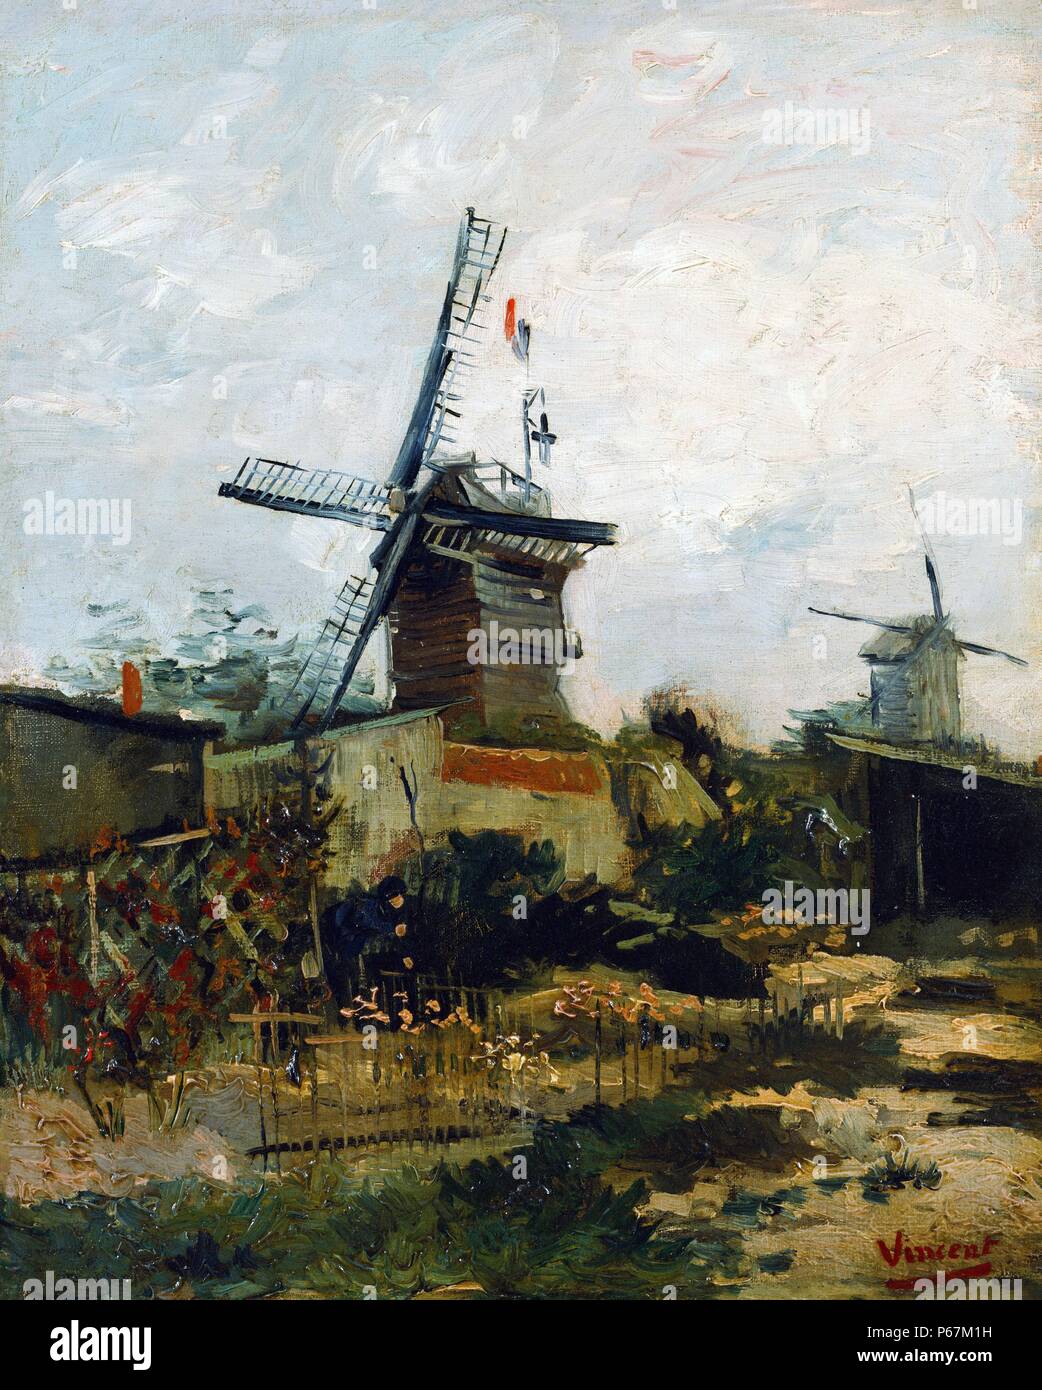 Gemälde einer Windmühle von Vincent Van Gogh (1853-1890) post-impressionistischen Maler niederländischer Herkunft. Datiert 1880 Stockfoto